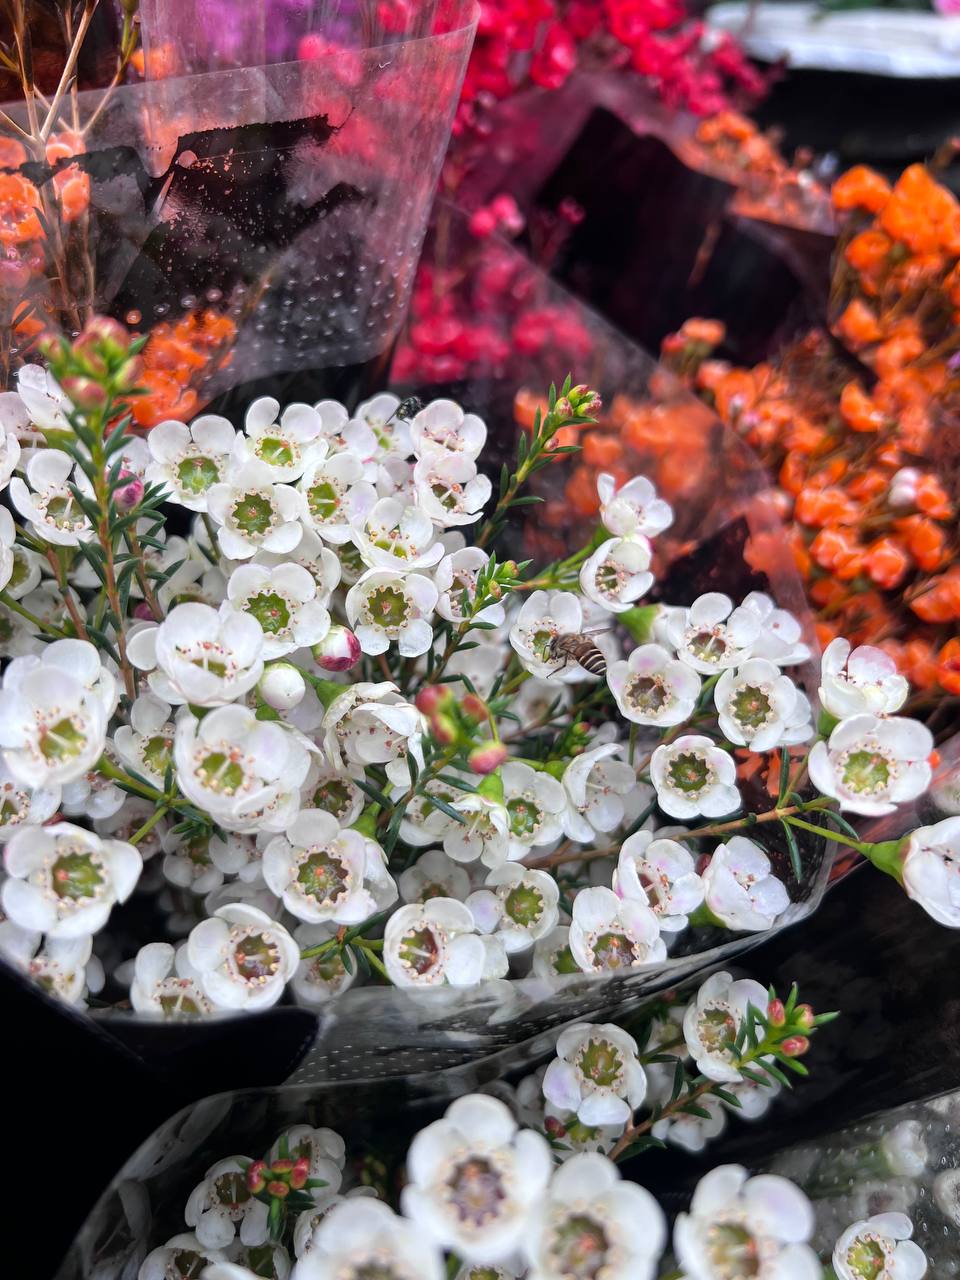 Mách bạn bí kíp mua hoa chợ Quảng Bá giá rẻ mà vẫn đẹp - Ảnh 4.